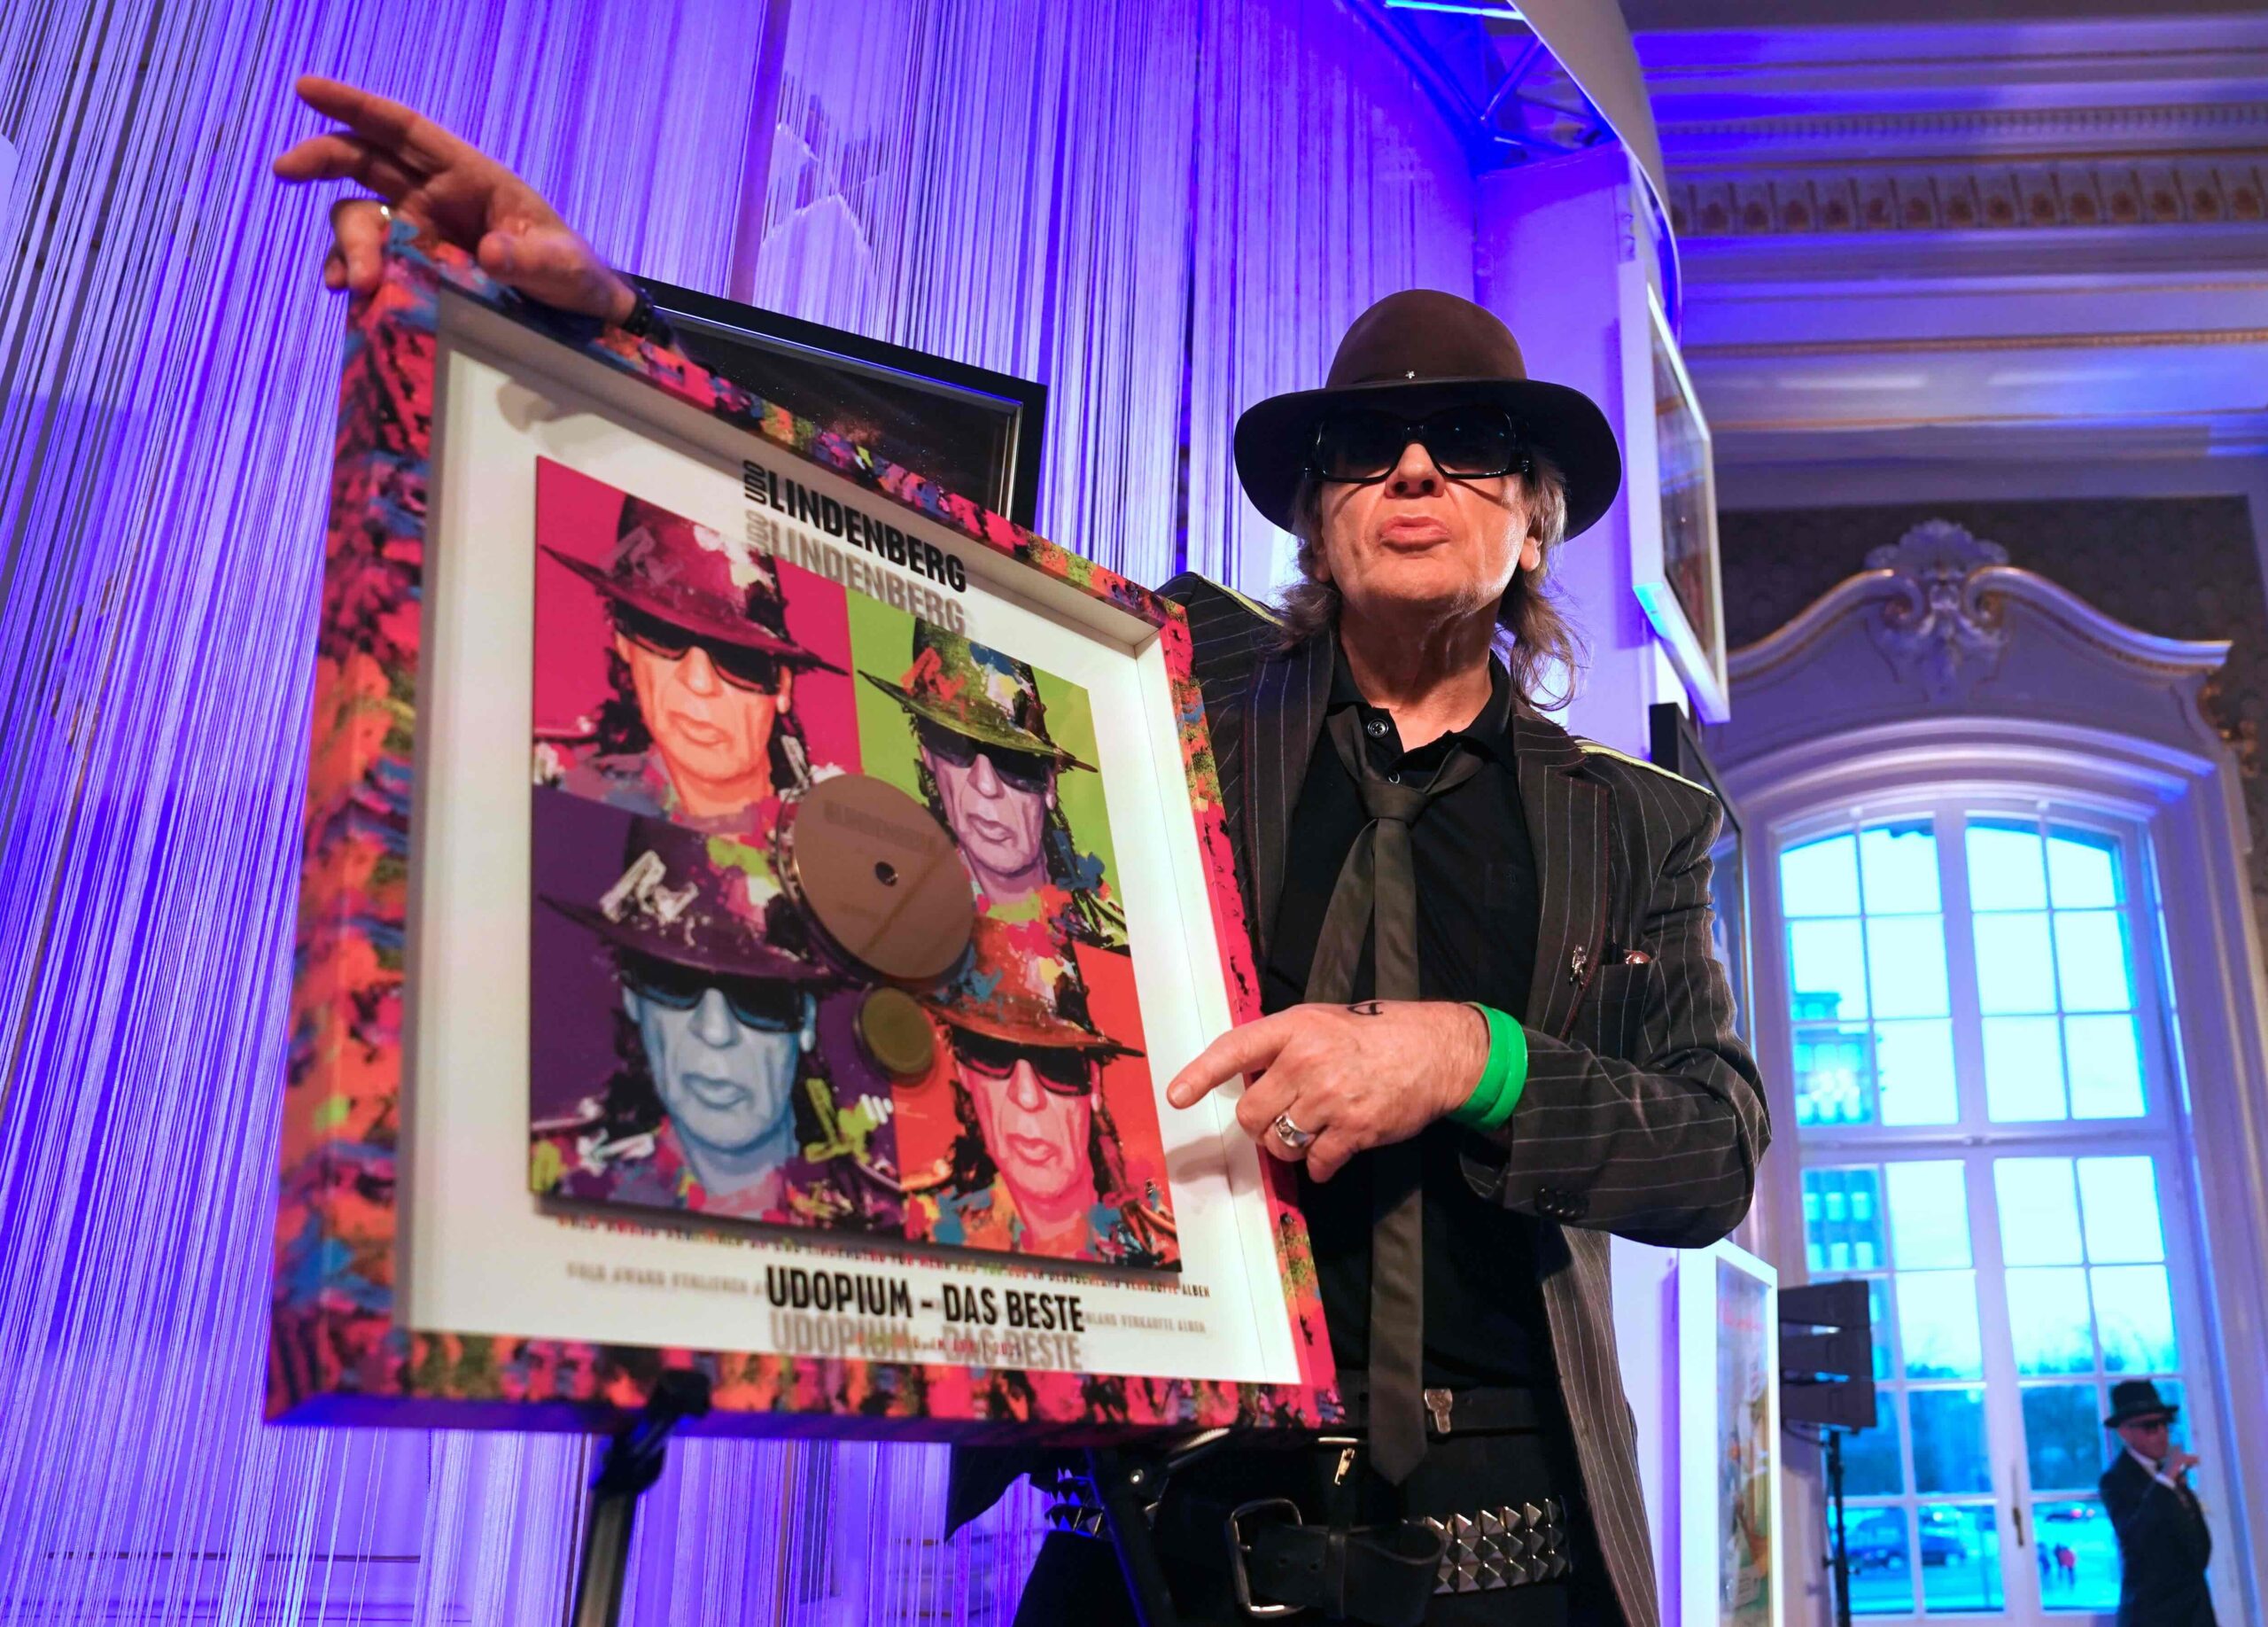 Udo Lindenberg steht neben seiner Auszeichnung für das Album „Udopium“ in der Laeiszhalle in Hamburg